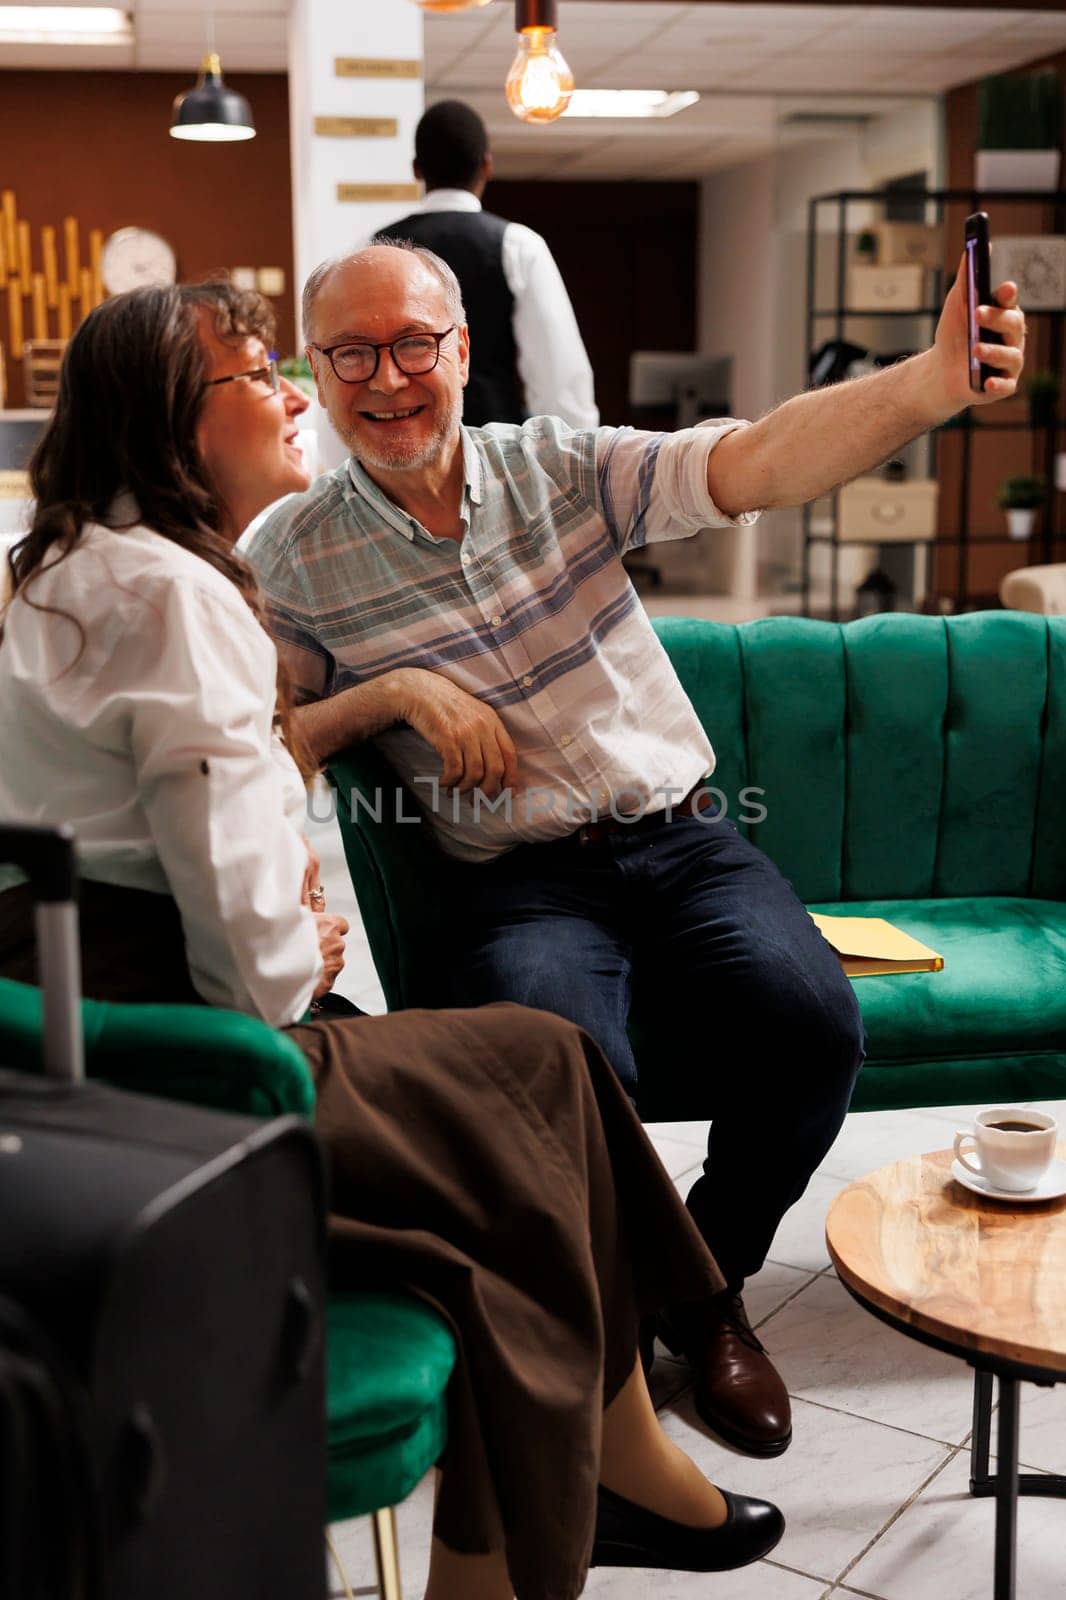 Couple taking selfies in elegant hotel by DCStudio